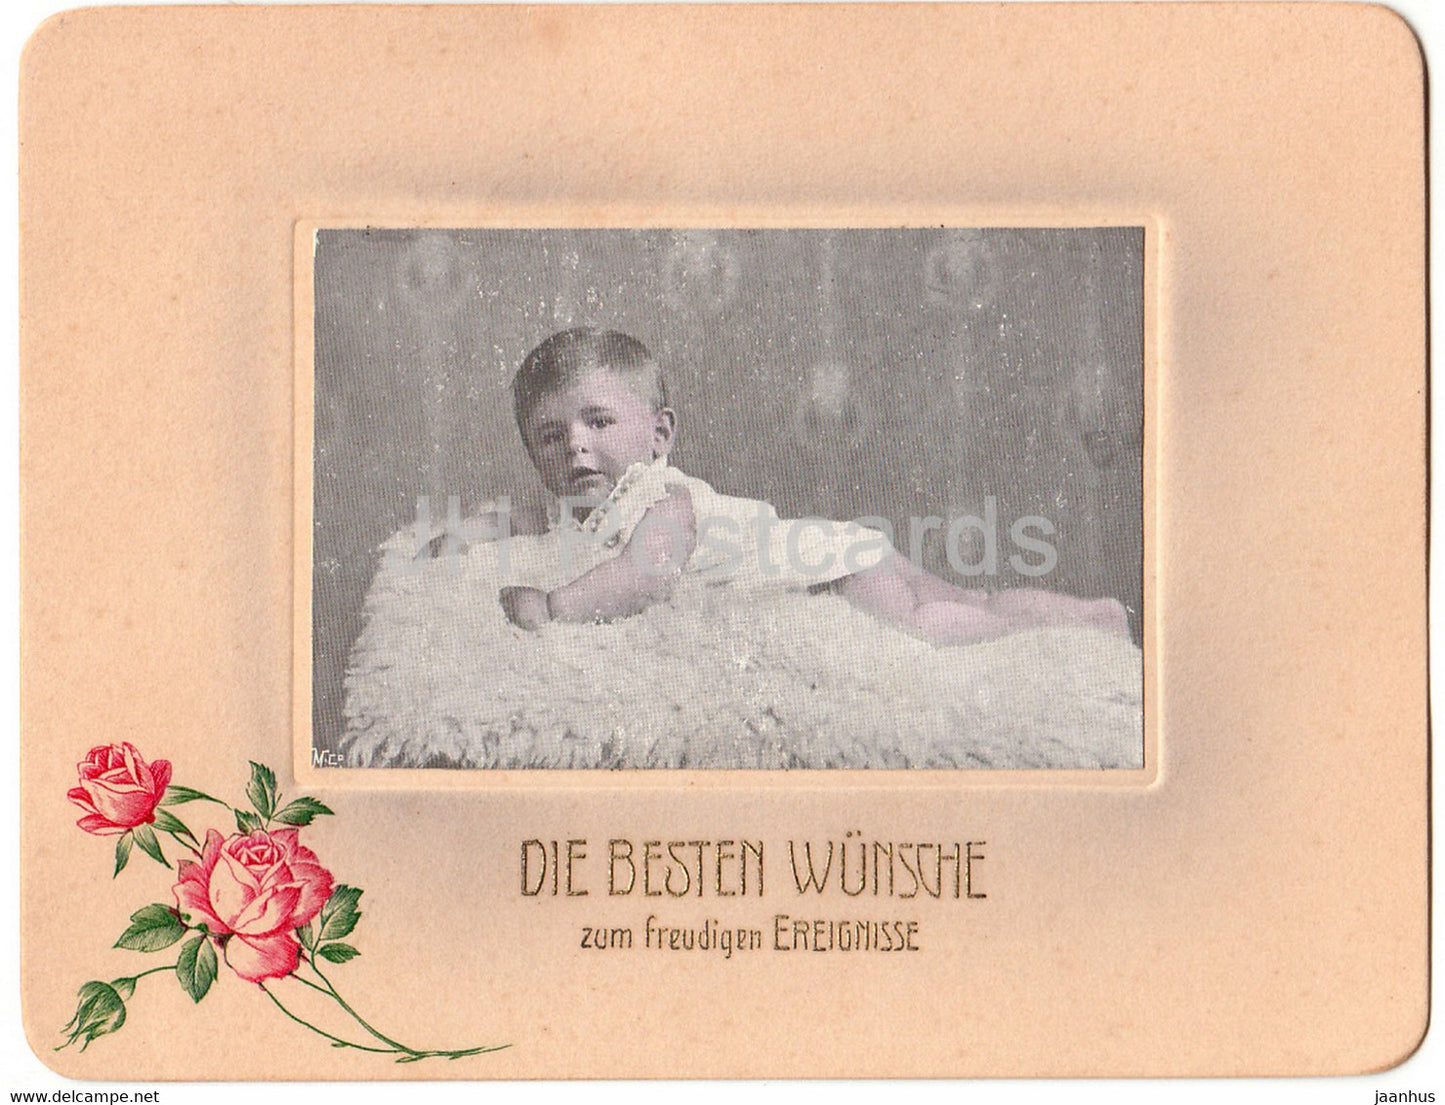 Greeting Card - Die Besten Wunsche zum freudigen Ereignisse - child - old postcard - Germany - used - JH Postcards